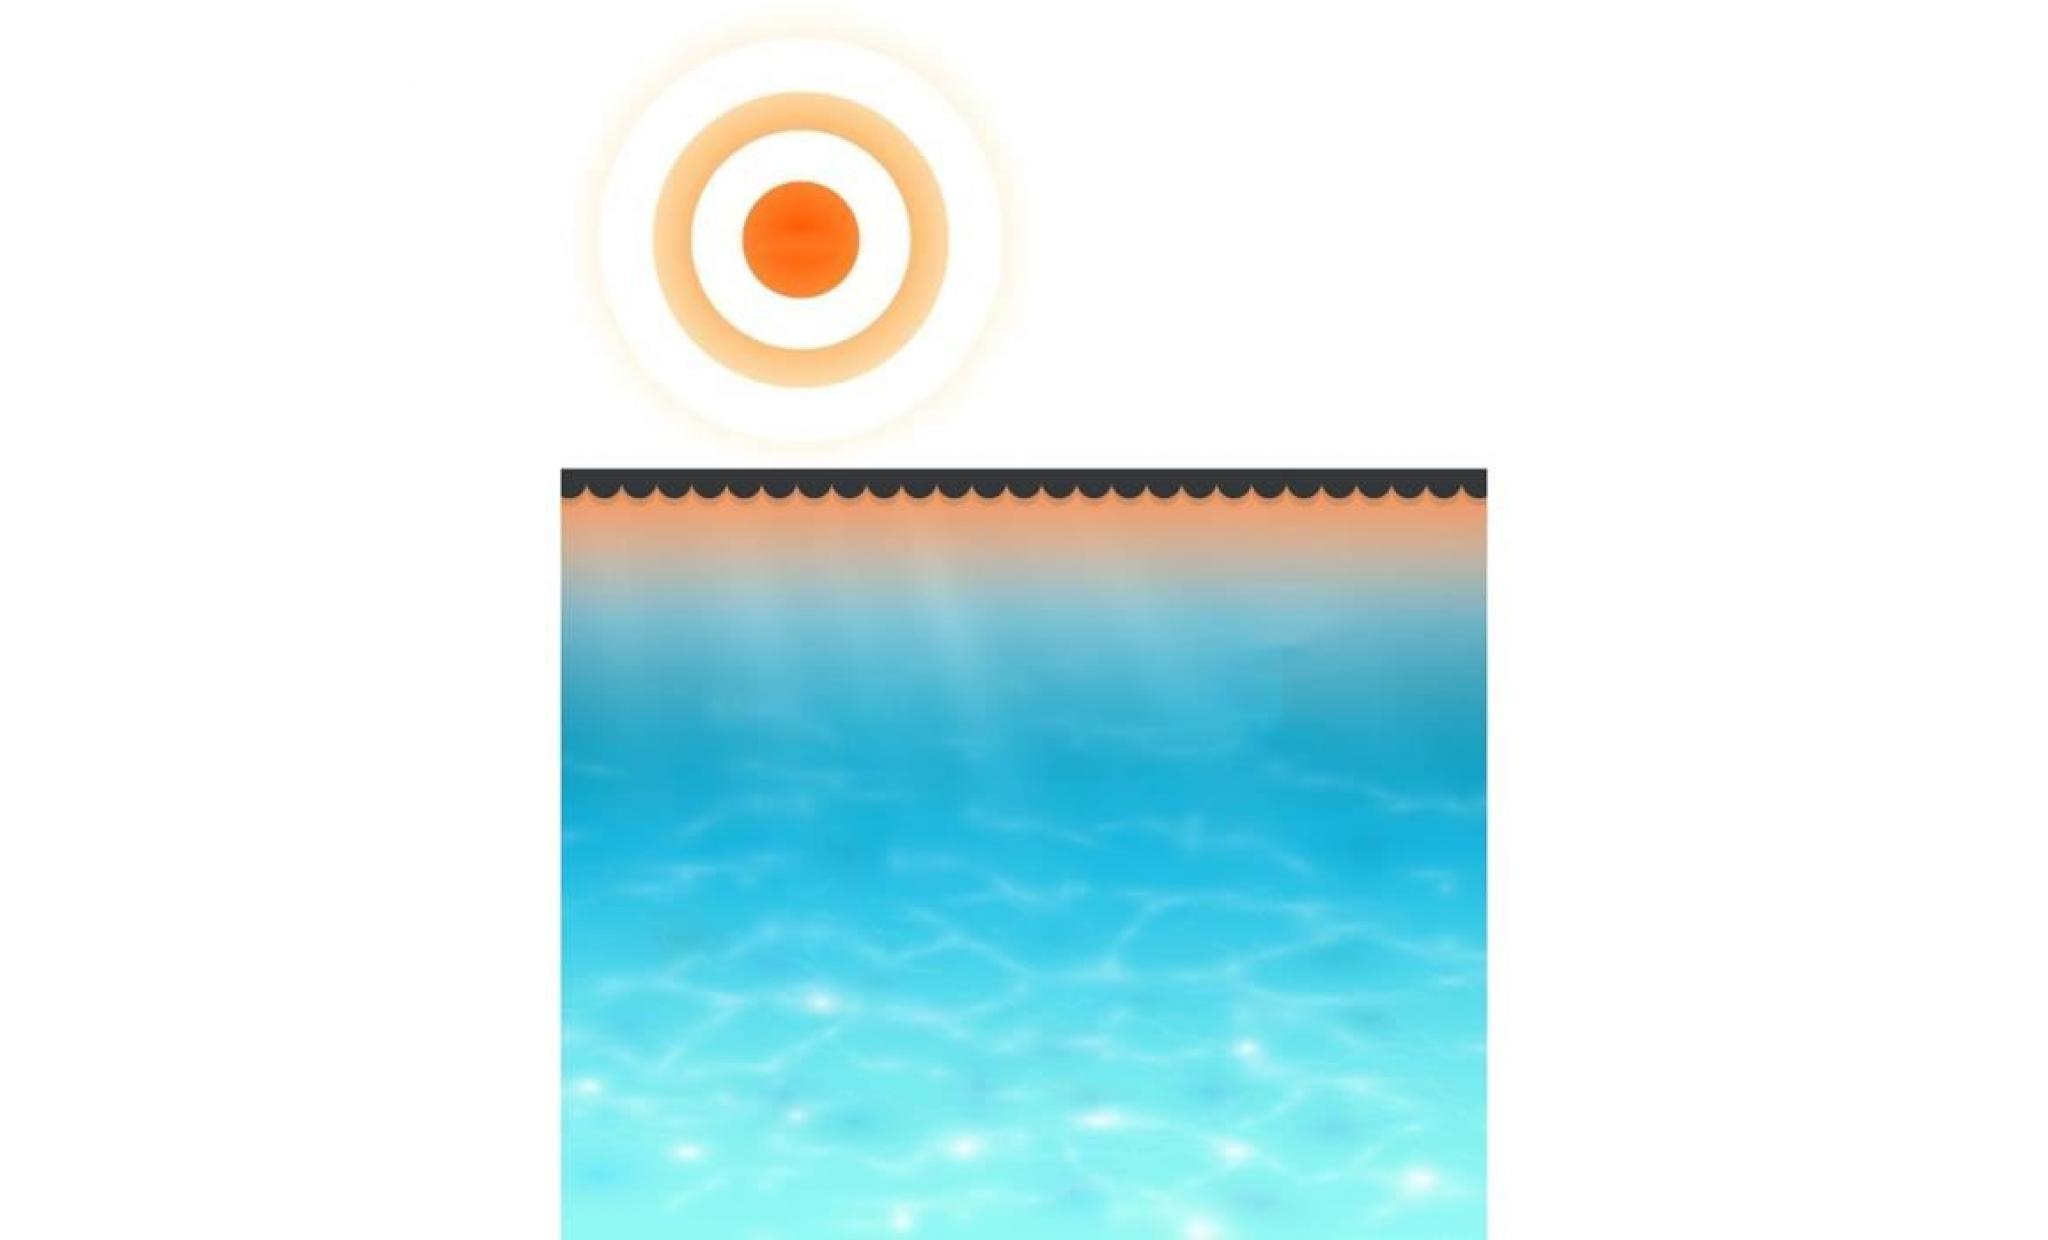 r154 ce film solaire de piscine peut augmenter la temperature de l'eau de votre piscine de 1 ° c a max. en fonction de l